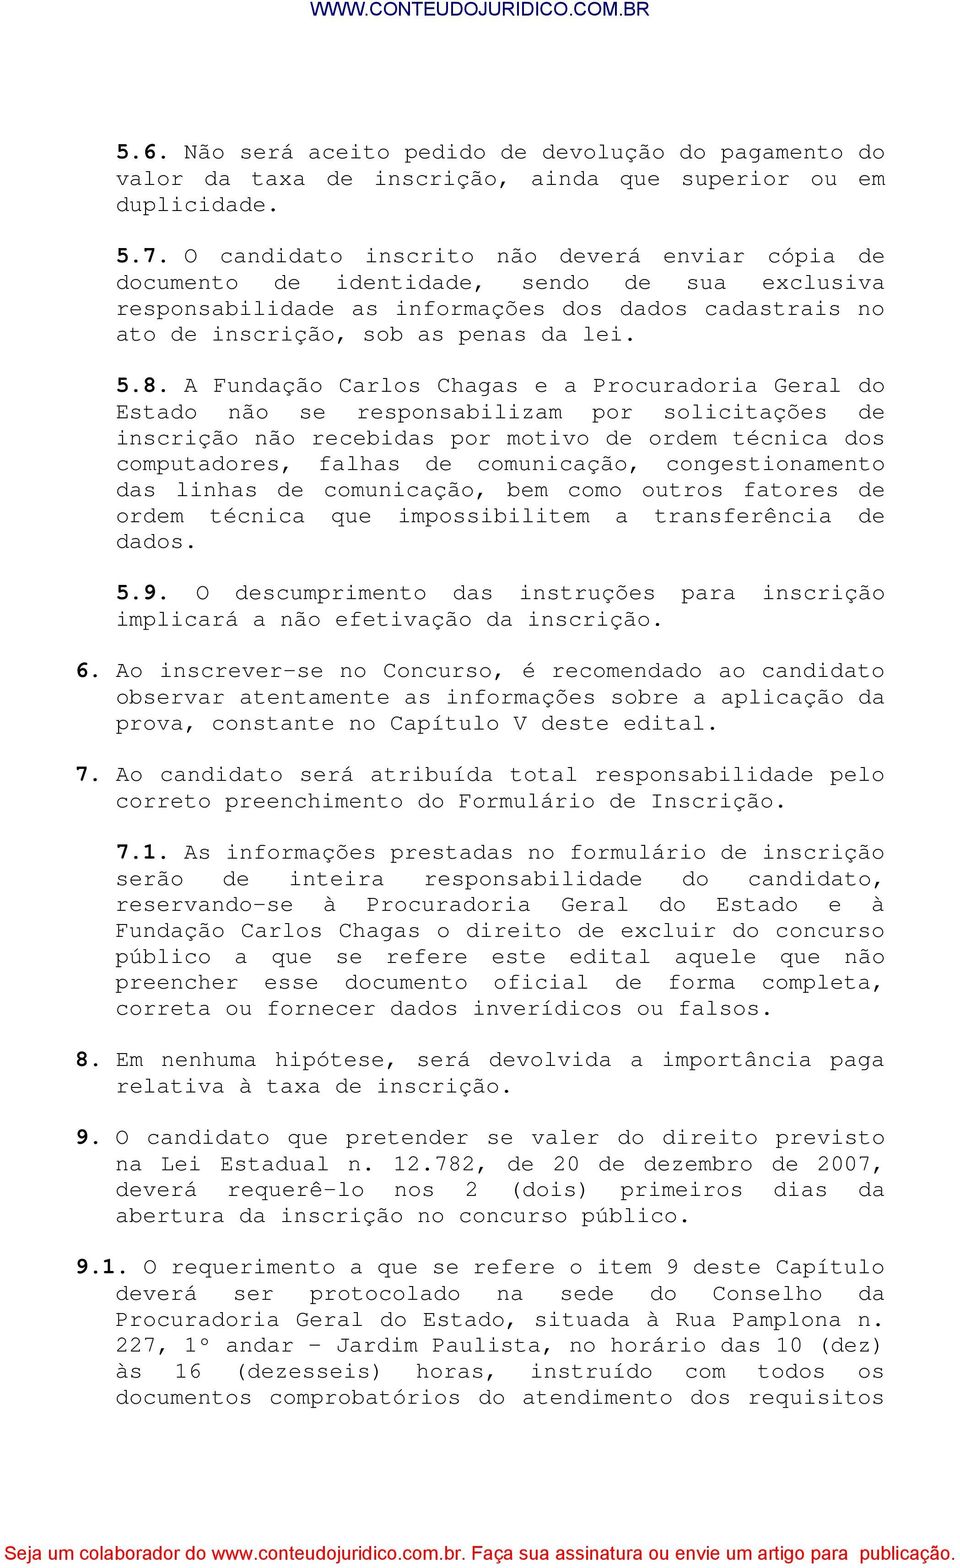 A Fundação Carlos Chagas e a Procuradoria Geral do Estado não se responsabilizam por solicitações de inscrição não recebidas por motivo de ordem técnica dos computadores, falhas de comunicação,